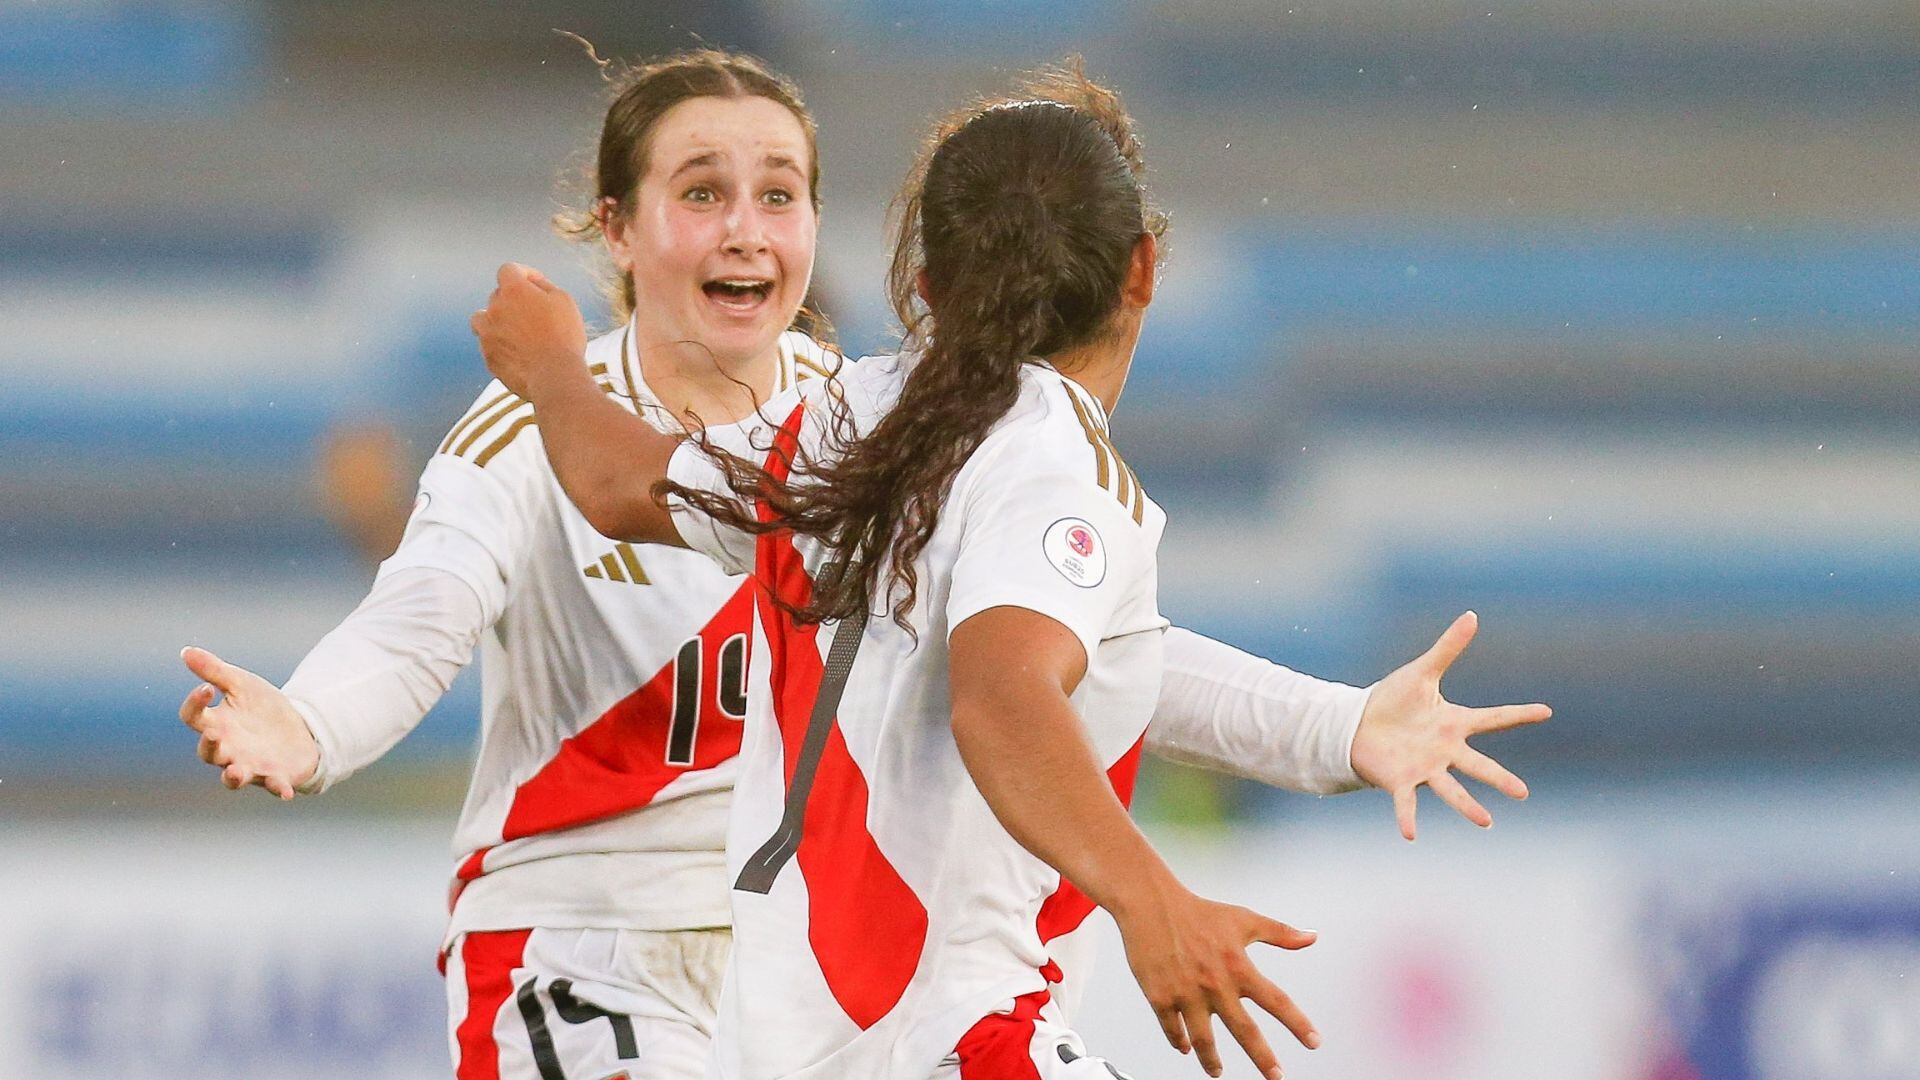 Valerie Gherson es una de las futbolistas más sobresalientes de Perú. - Crédito: Conmebol